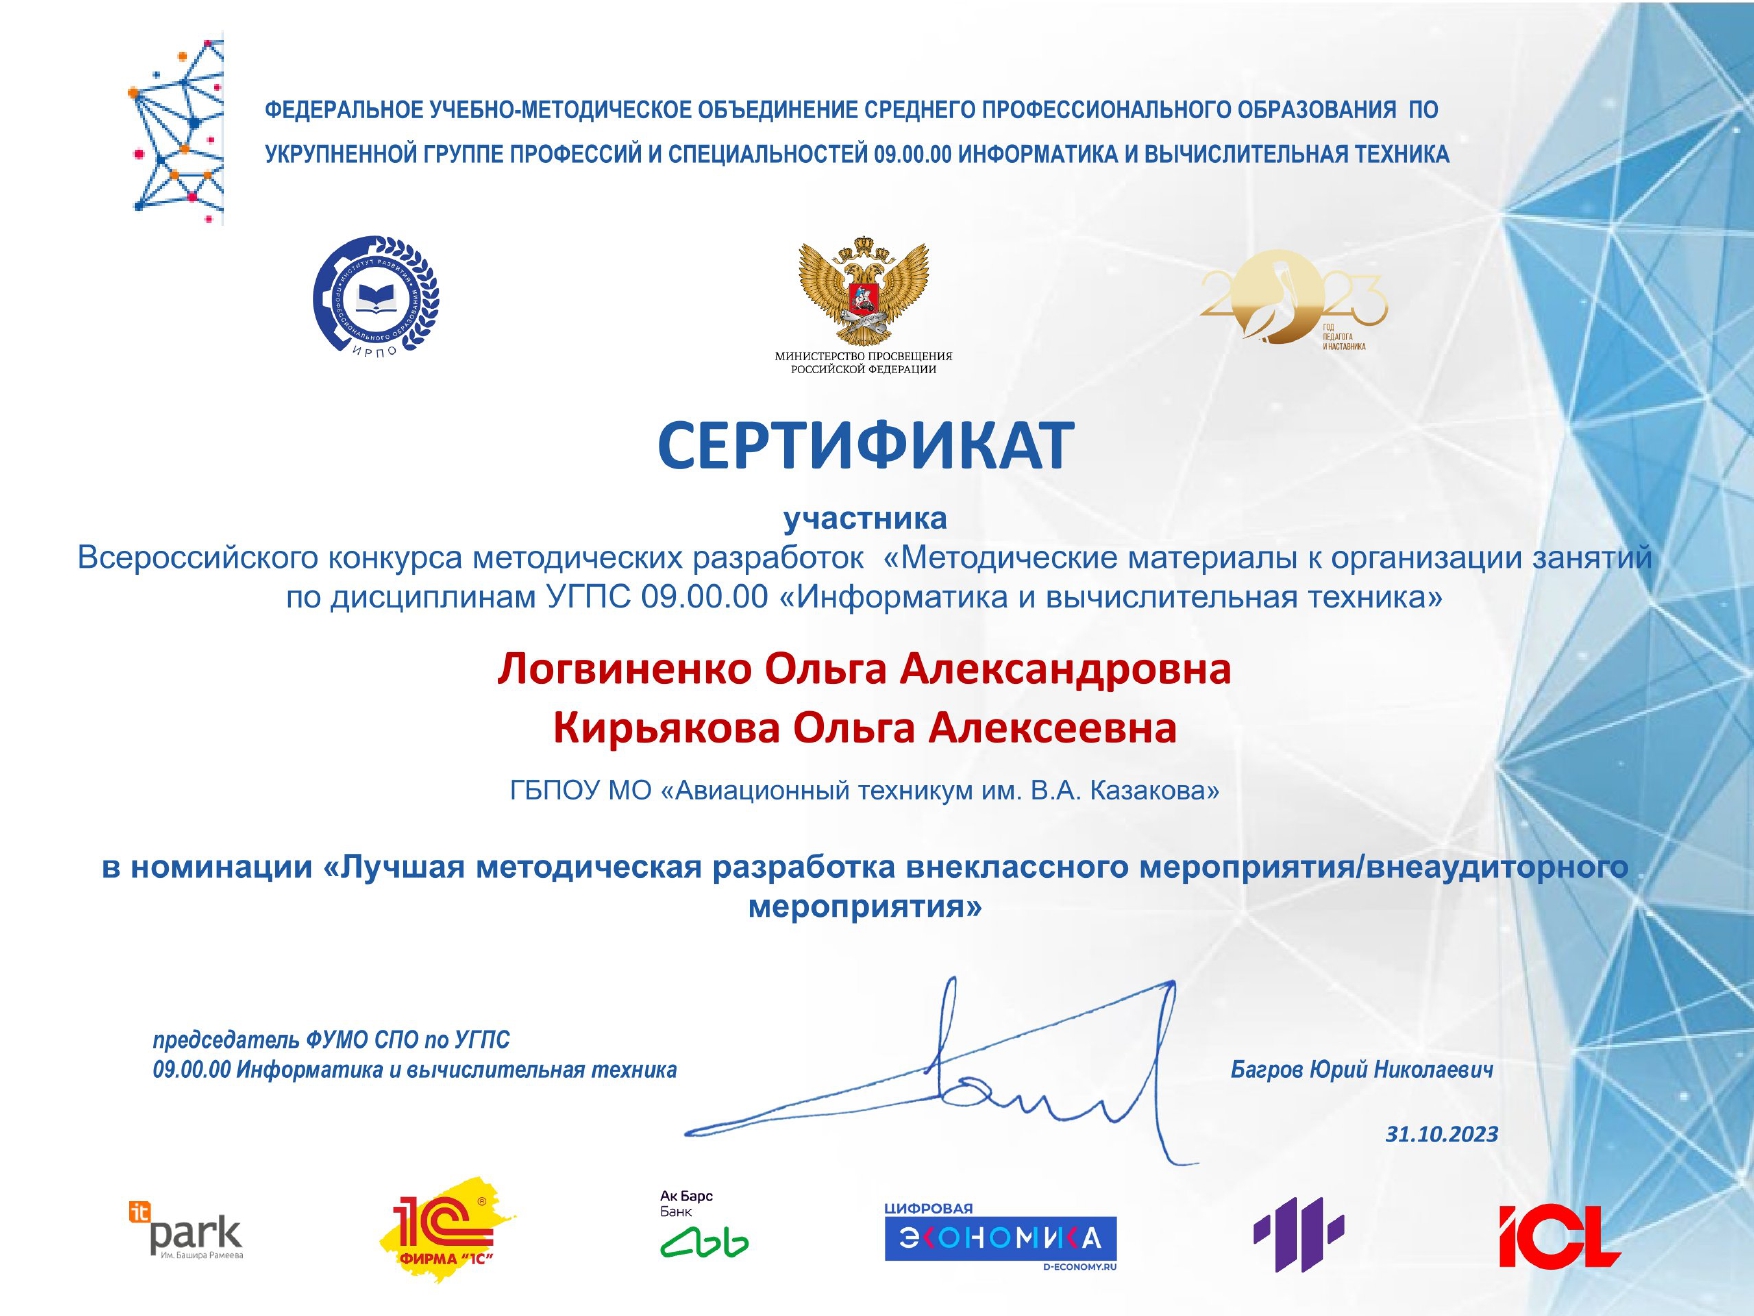 c Сертификат Логвиненко Кирьякова page 0001